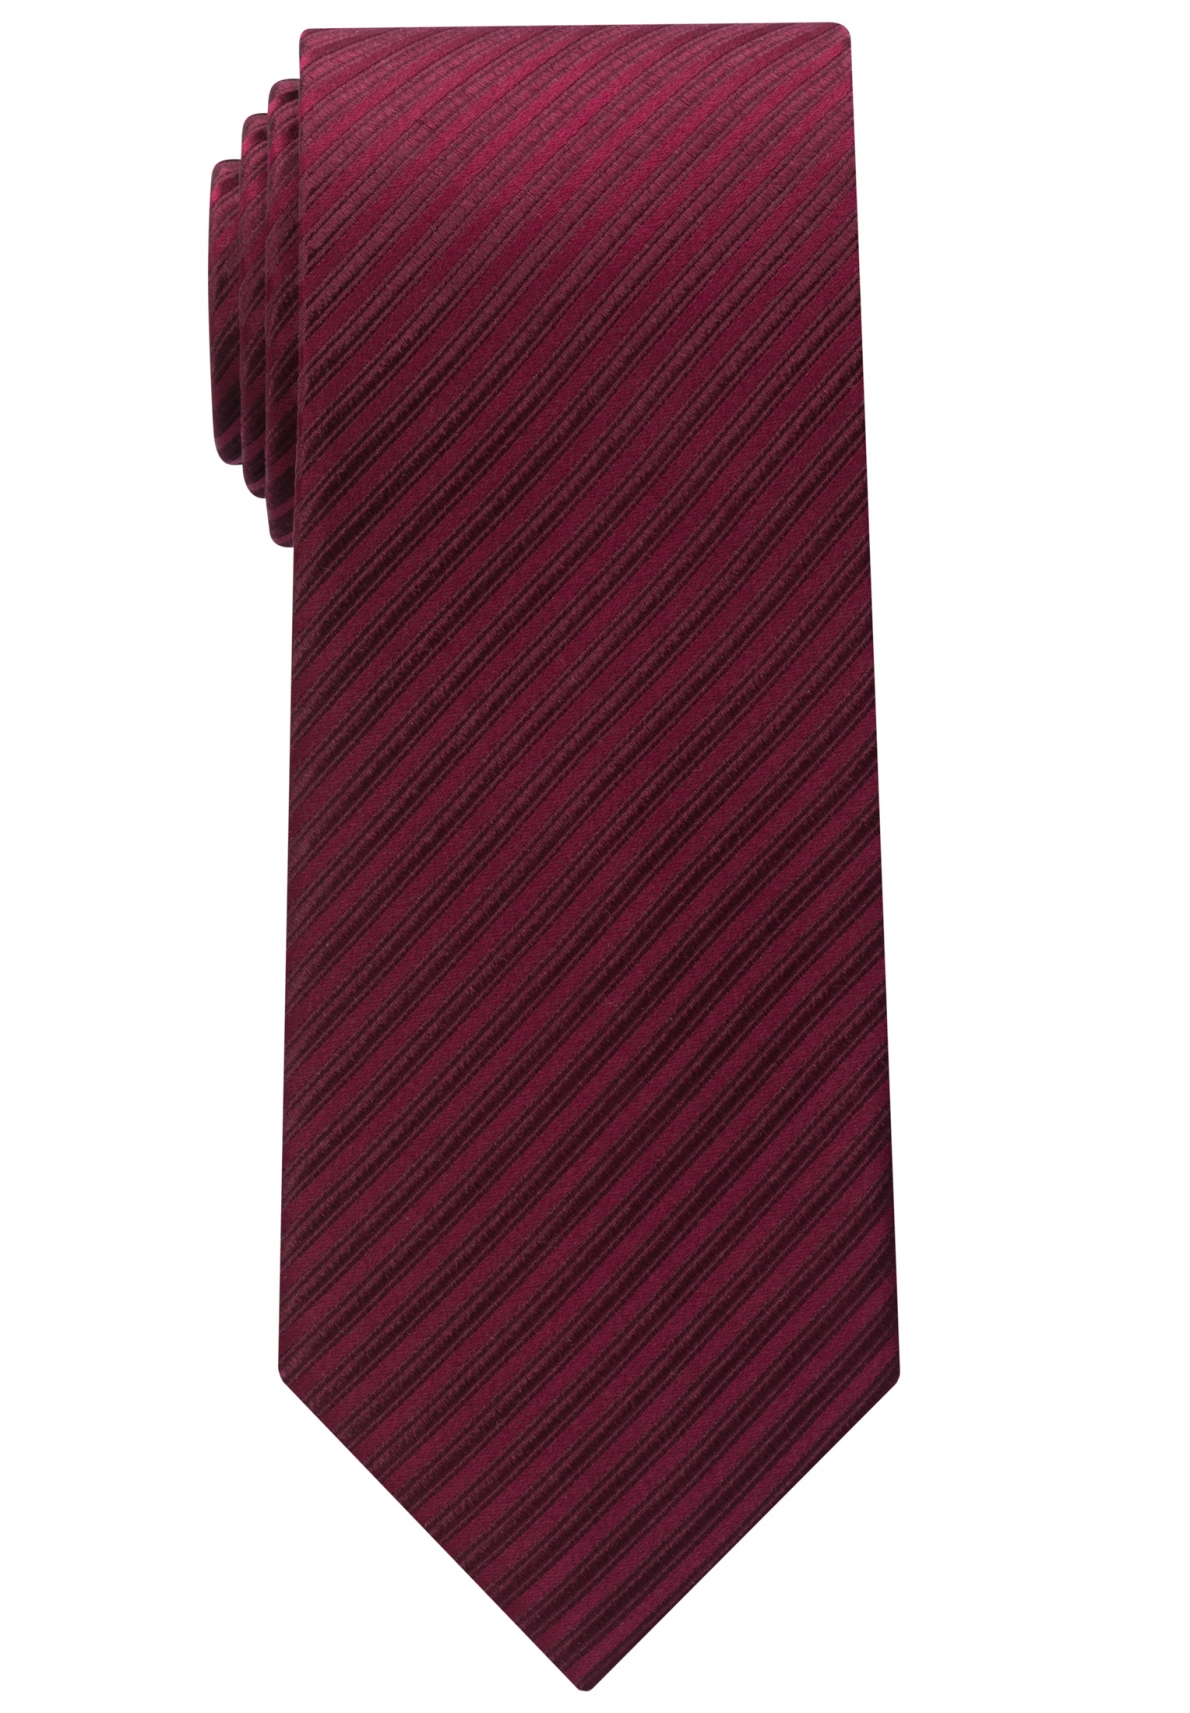 Eterna Krawatte dunkelrot gestreift 9716-57 | MODE SPEZIALIST